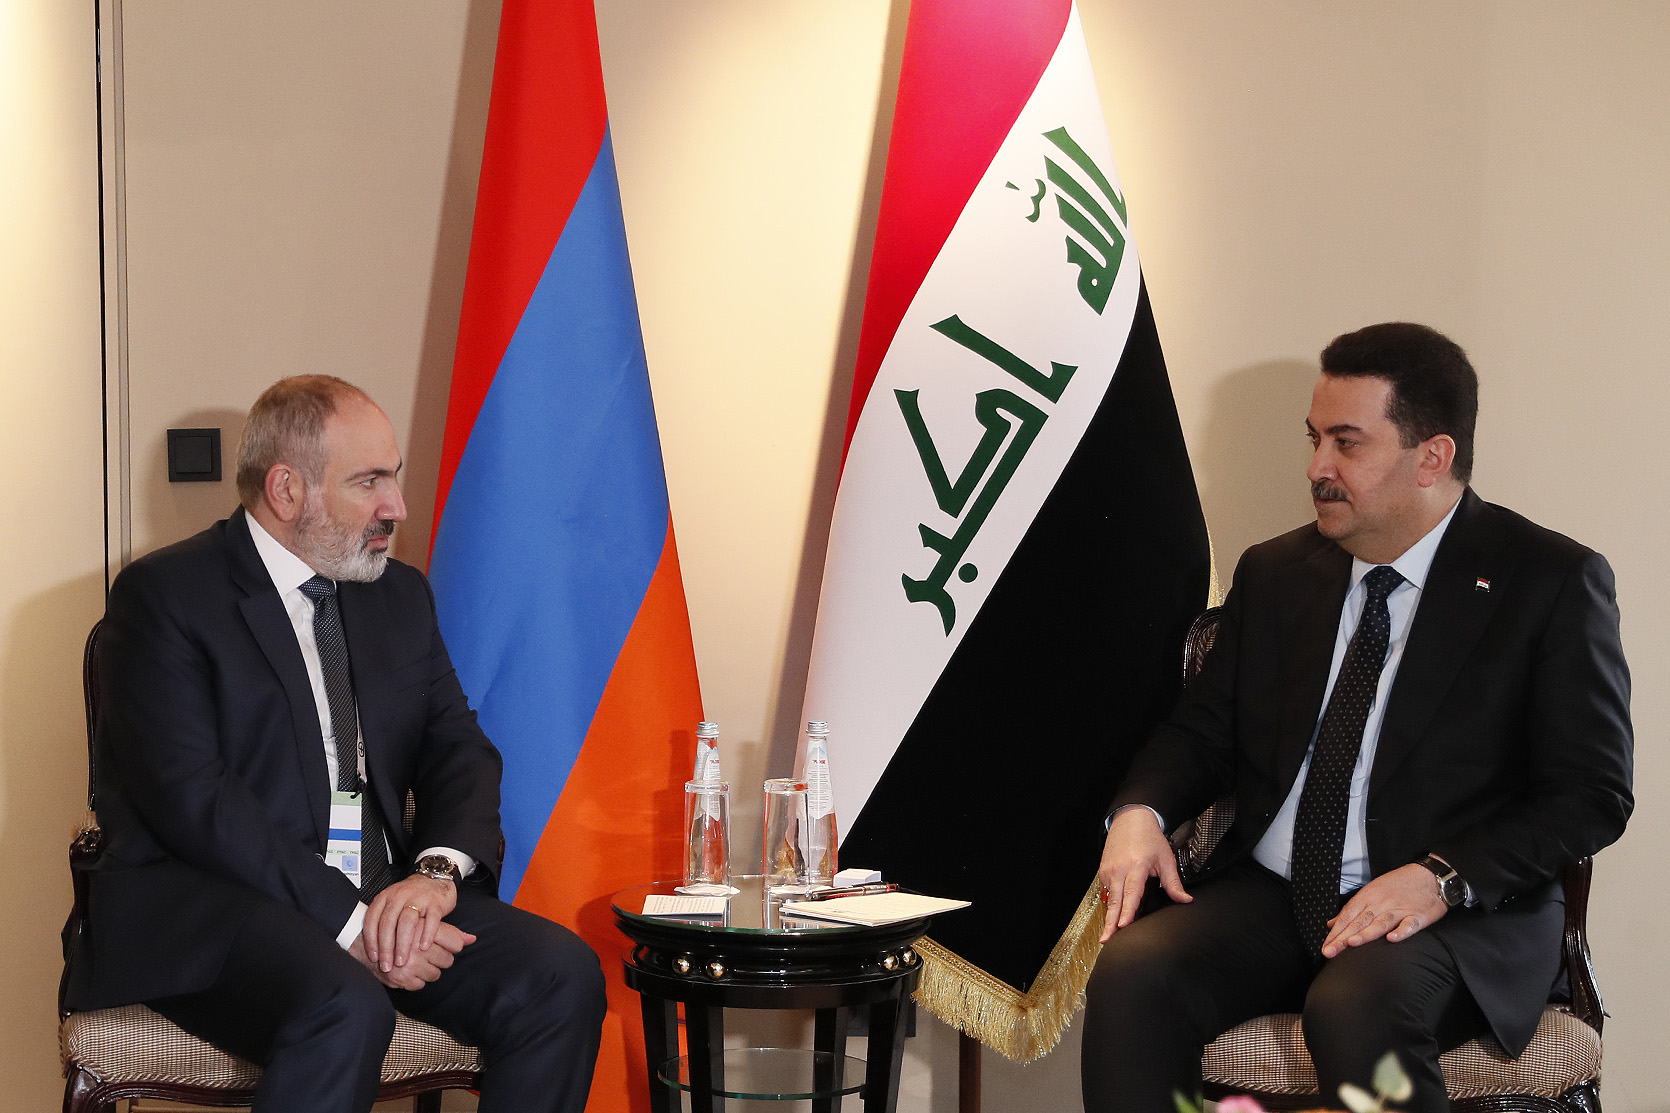 Փաշինյանը հանդիպում է ունեցել Իրաքի վարչապետի հետ․ կարևորվել են հայ-իրաքյան հարաբերությունների զարգացումը տարբեր ուղղություններով